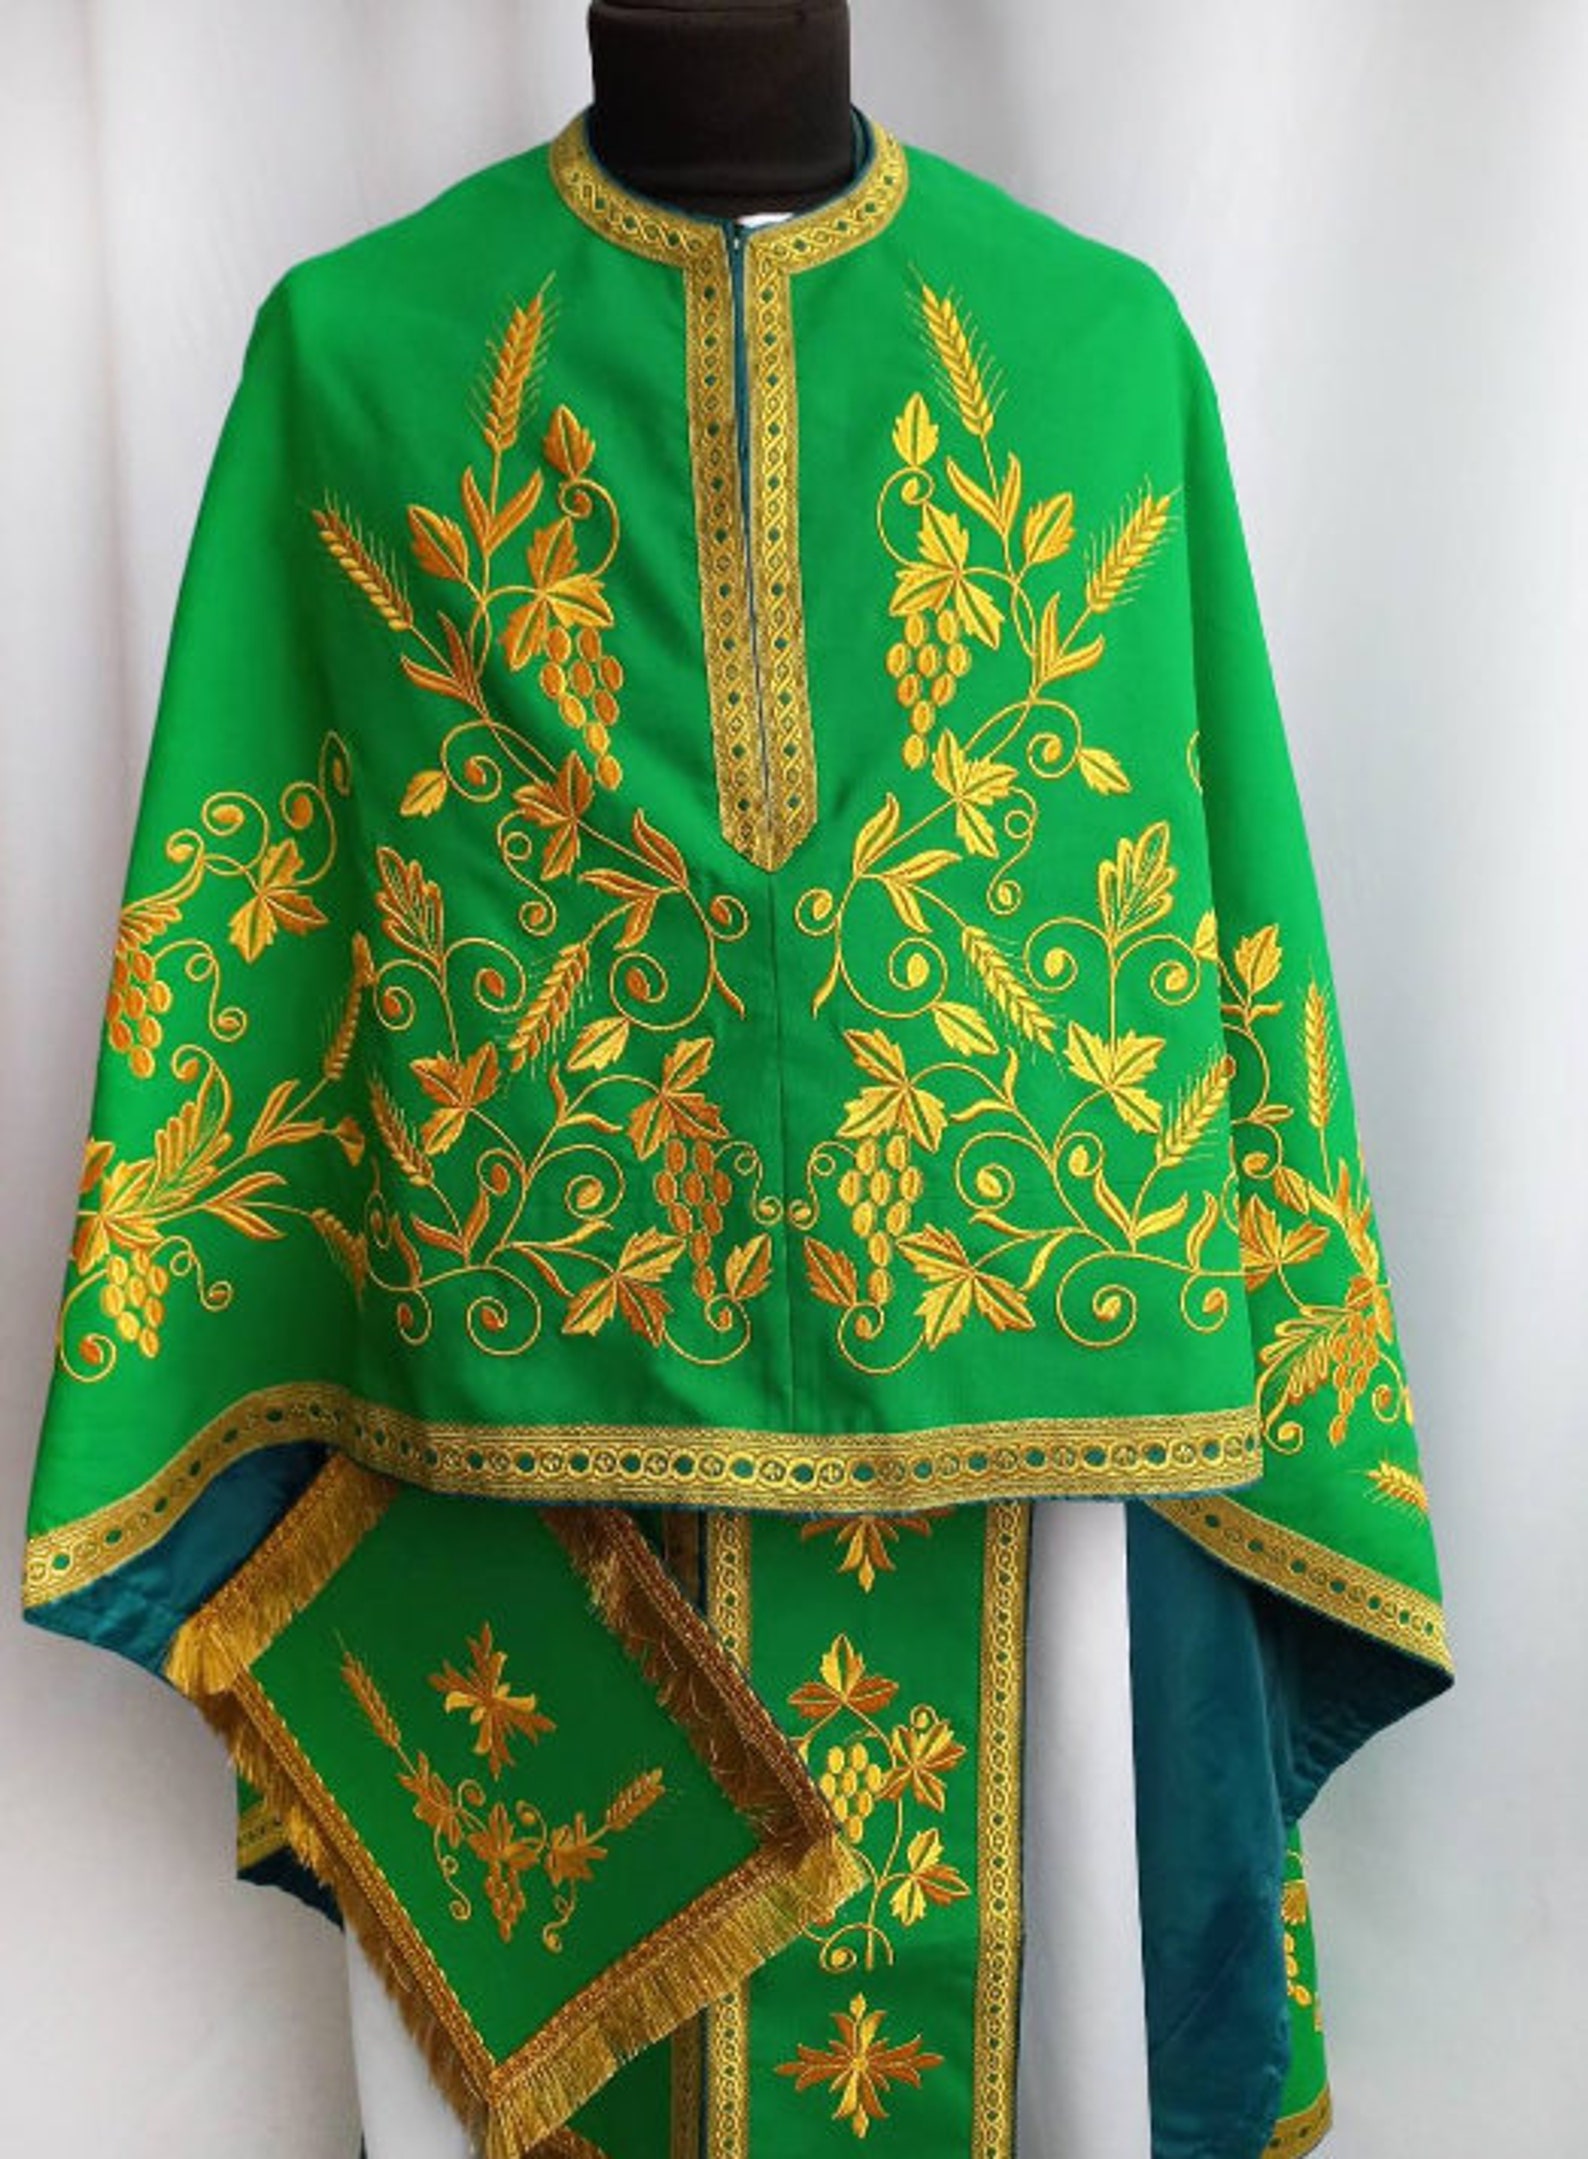 Green Greek vestment Priest robe Orthodox vestments | Etsy